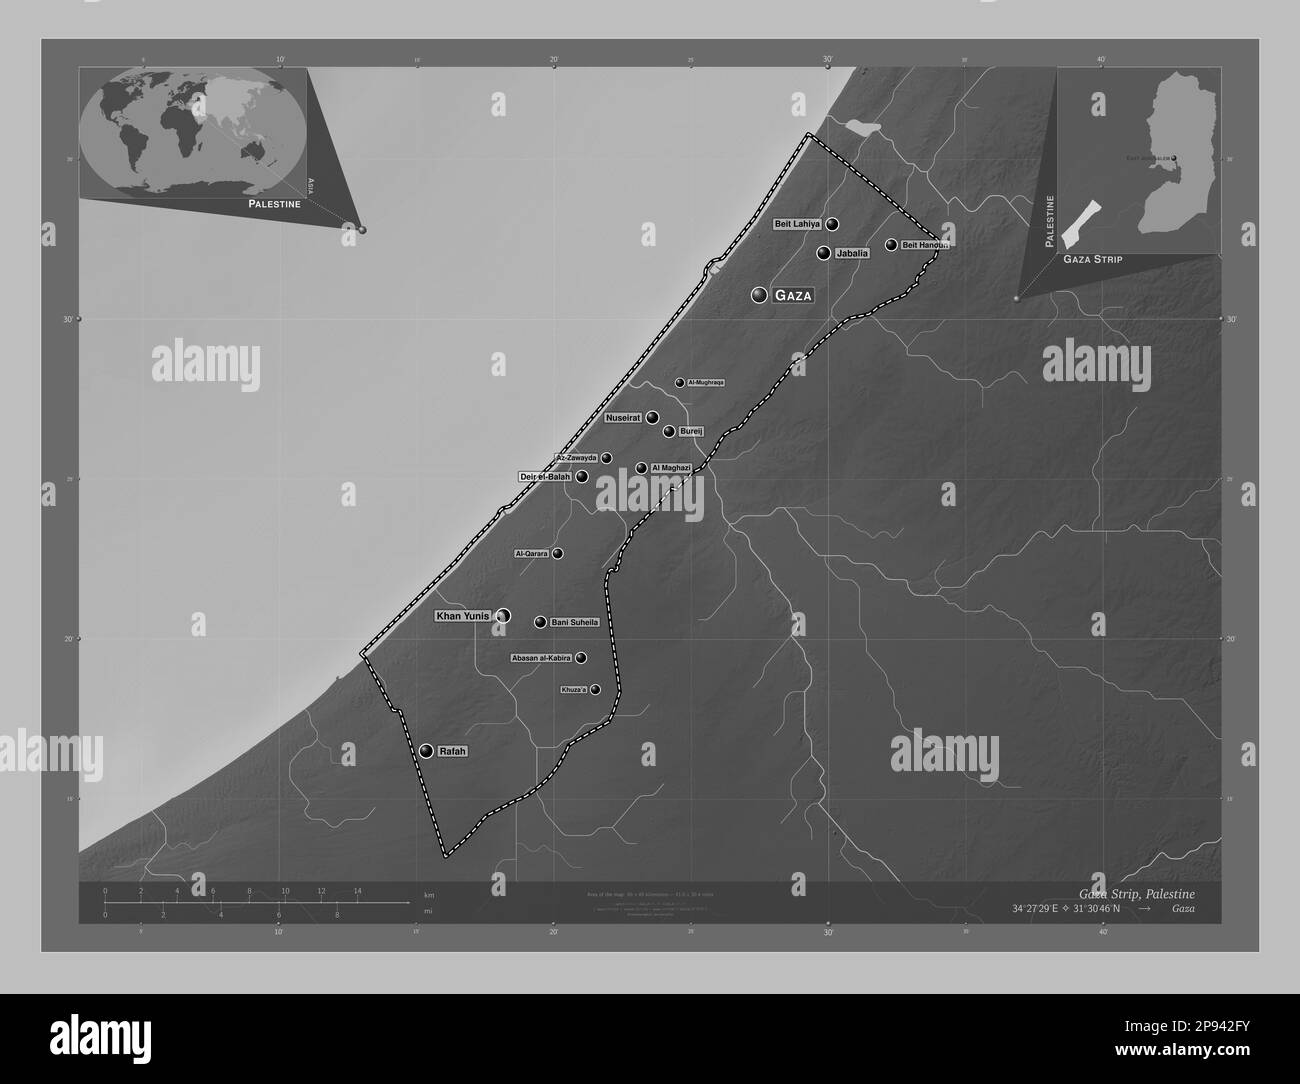 Striscia di Gaza, regione della Palestina. Mappa in scala di grigi con laghi e fiumi. Località e nomi delle principali città della regione. Angolo ausiliario basso Foto Stock